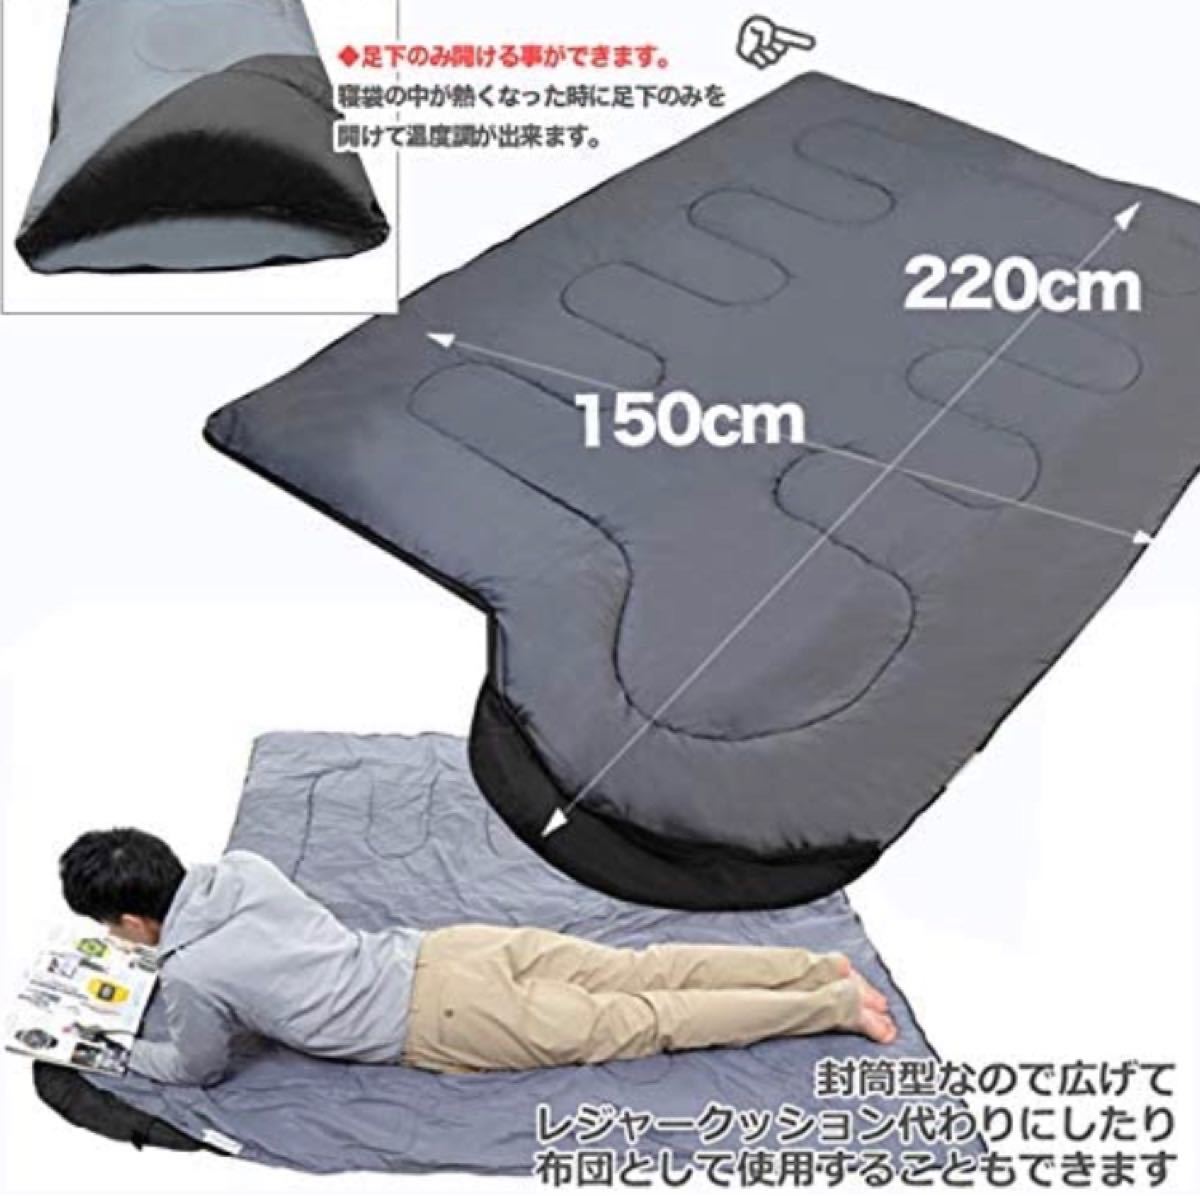 寝袋 黒 抗菌仕様 封筒型 キャンプ アウトドア シュラフ 車中泊 ツートーン 軽量 寝袋シュラフ スリーピングバッグ 収納袋